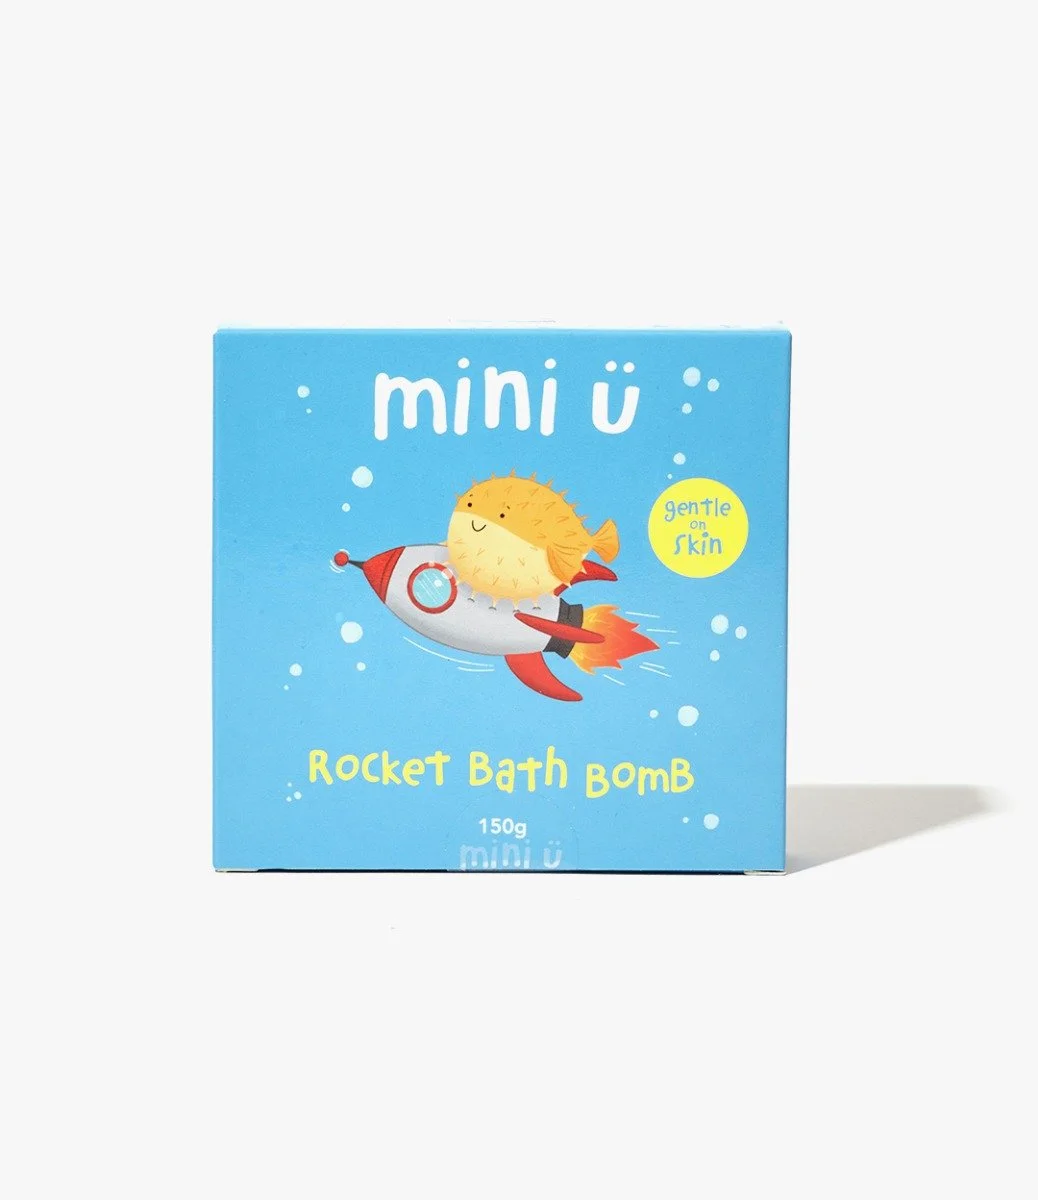 Rocket Bath Bomb by Mini U